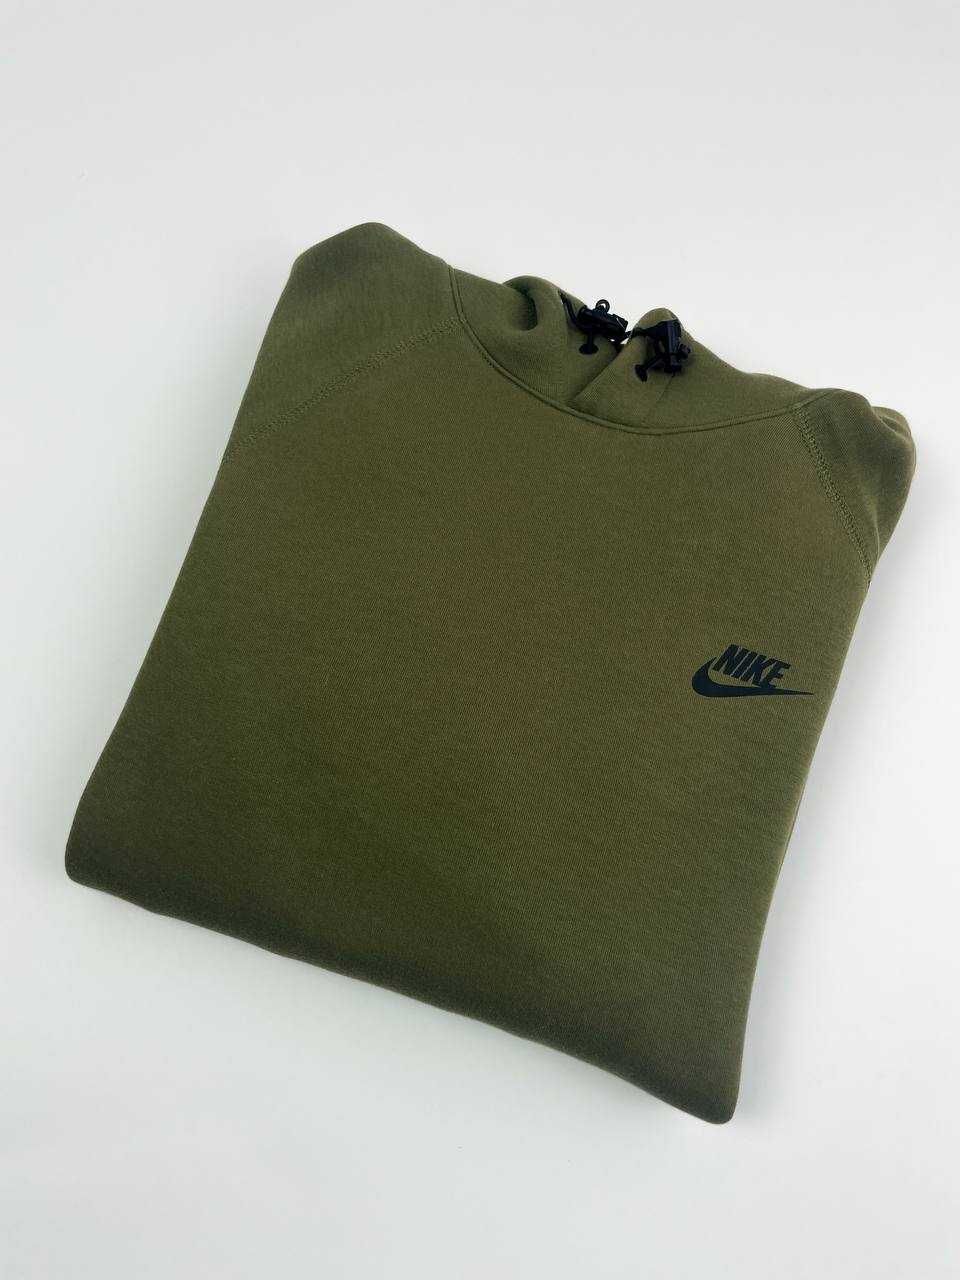 Оригінал! Худі Nike Tech Fleece Pullover оливкове (М) Нове з бірками!